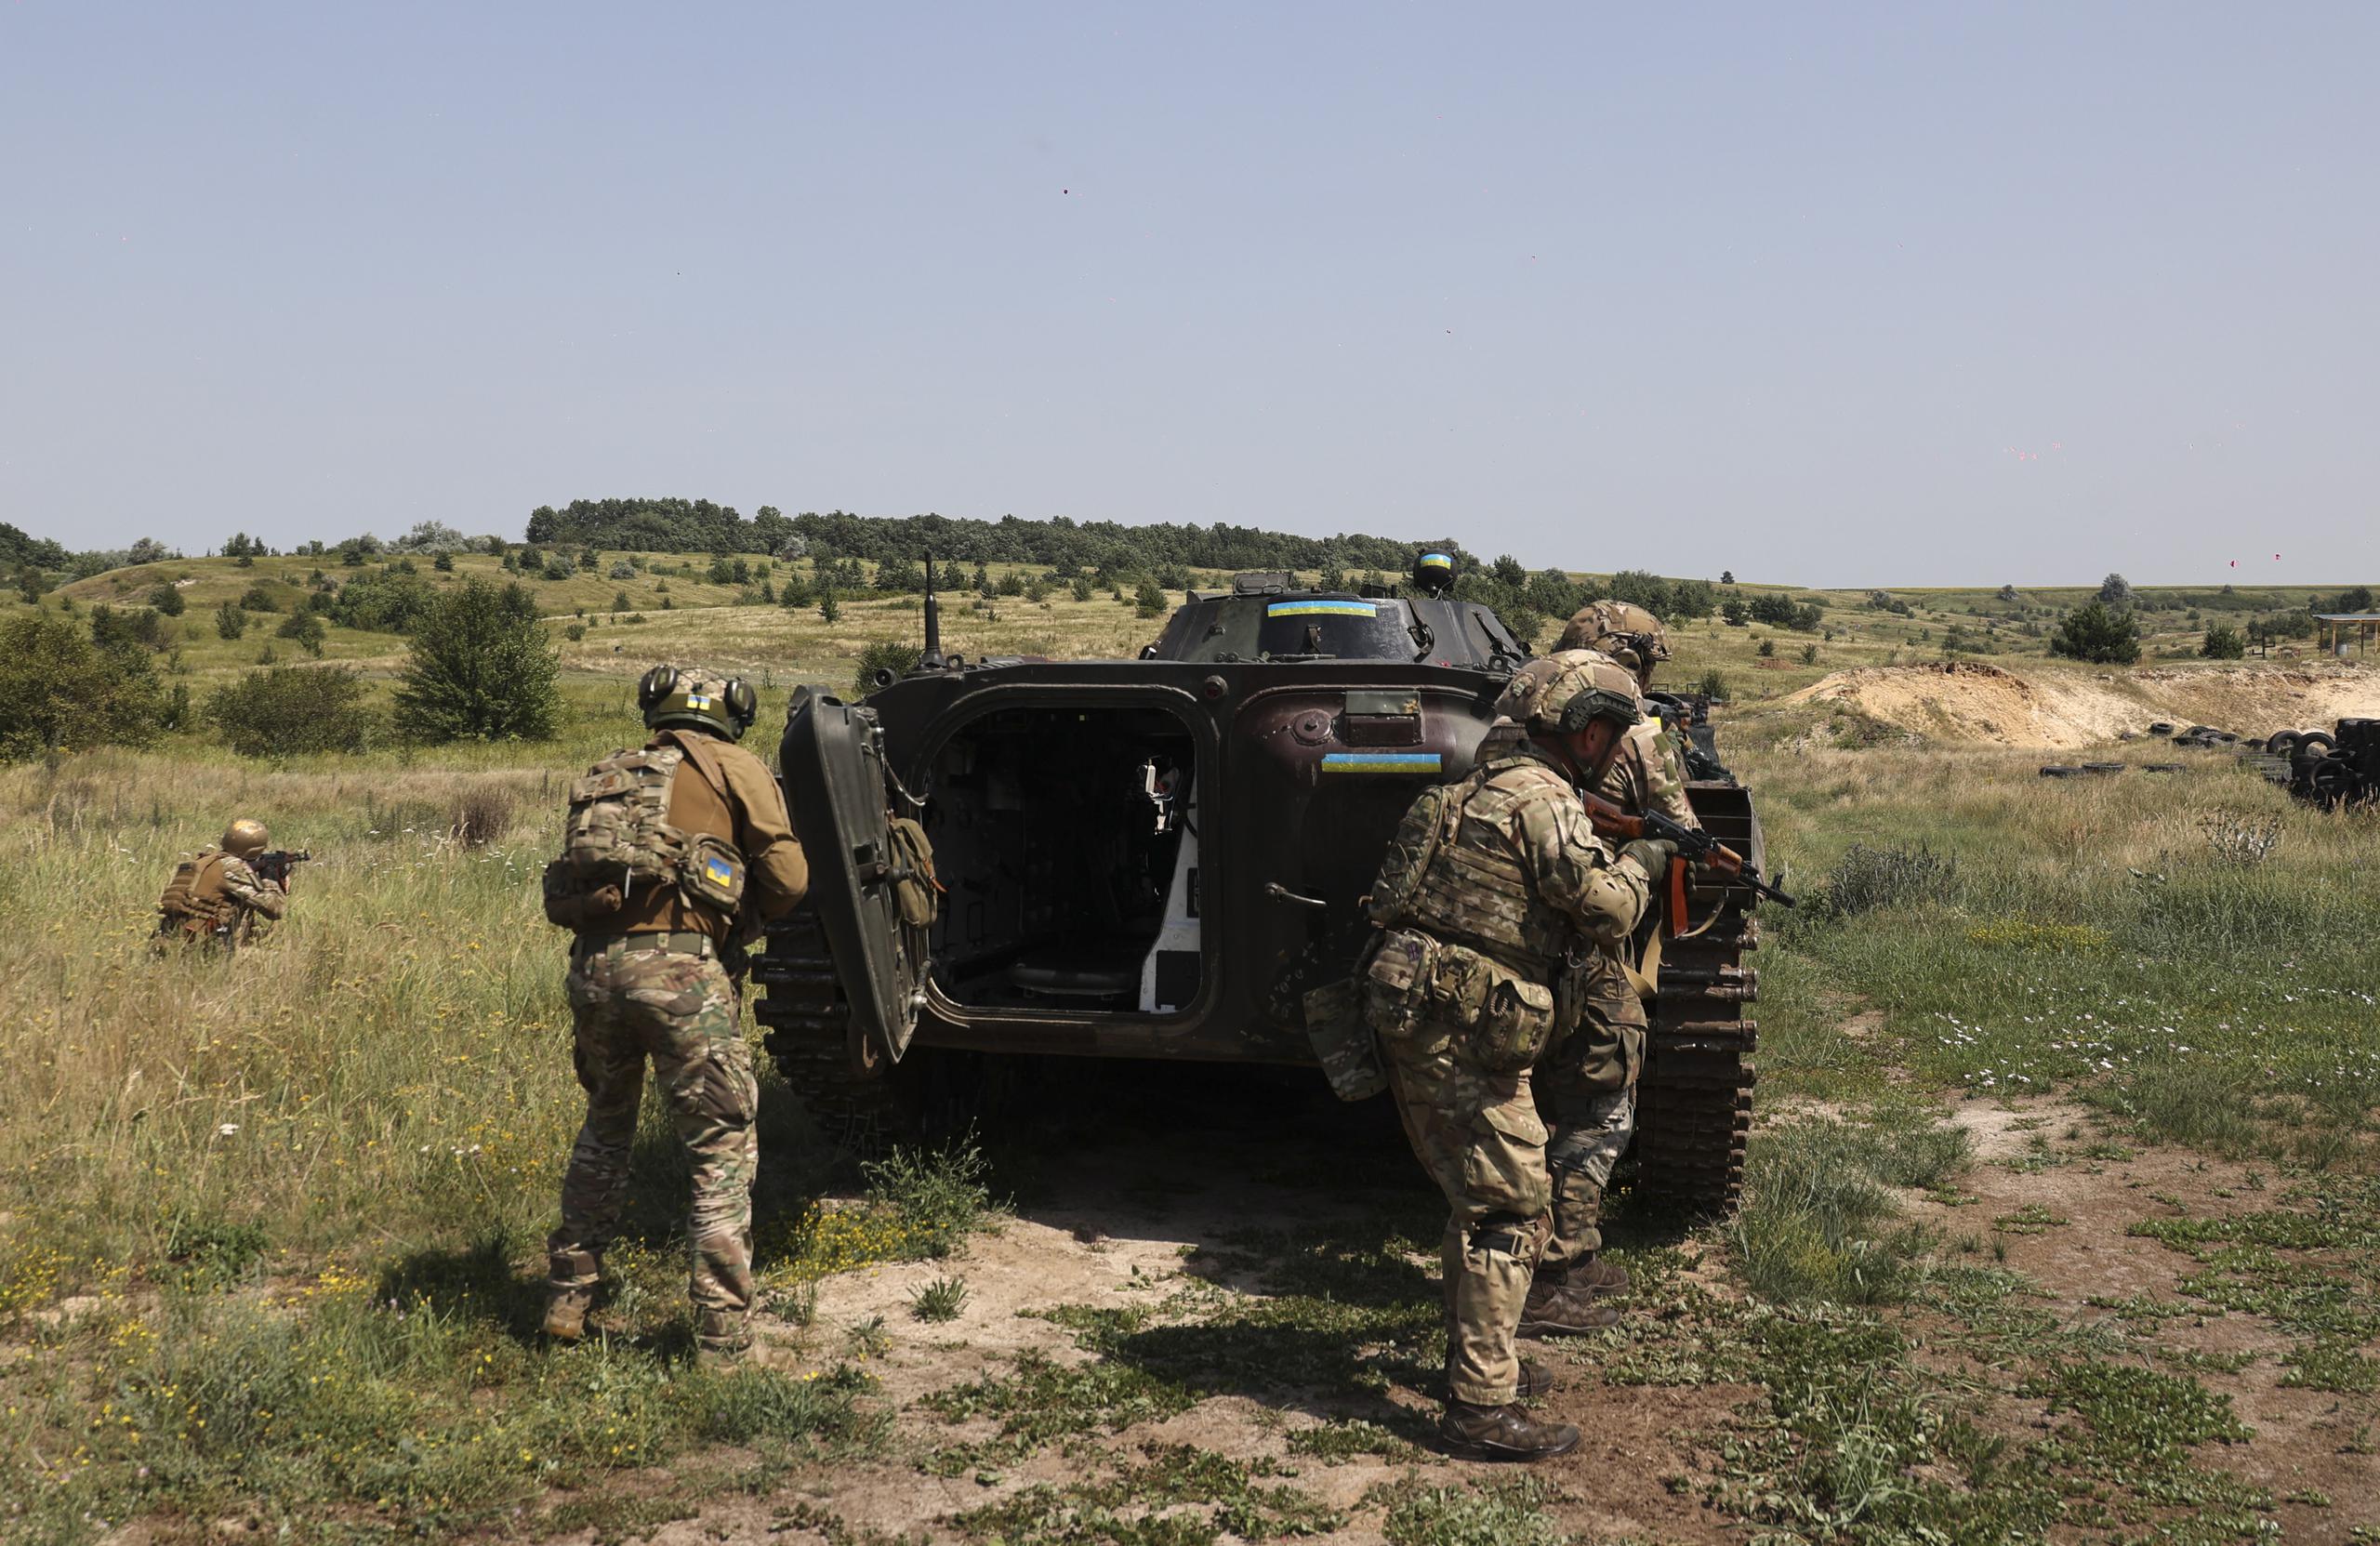 Según el jefe de las fuerzas terrestres ucranianas, Oleksandr Sirski, Ucrania repele “cada día numerosos asaltos rusos”.
(EFE/EPA/SERGEY KOZLOV)